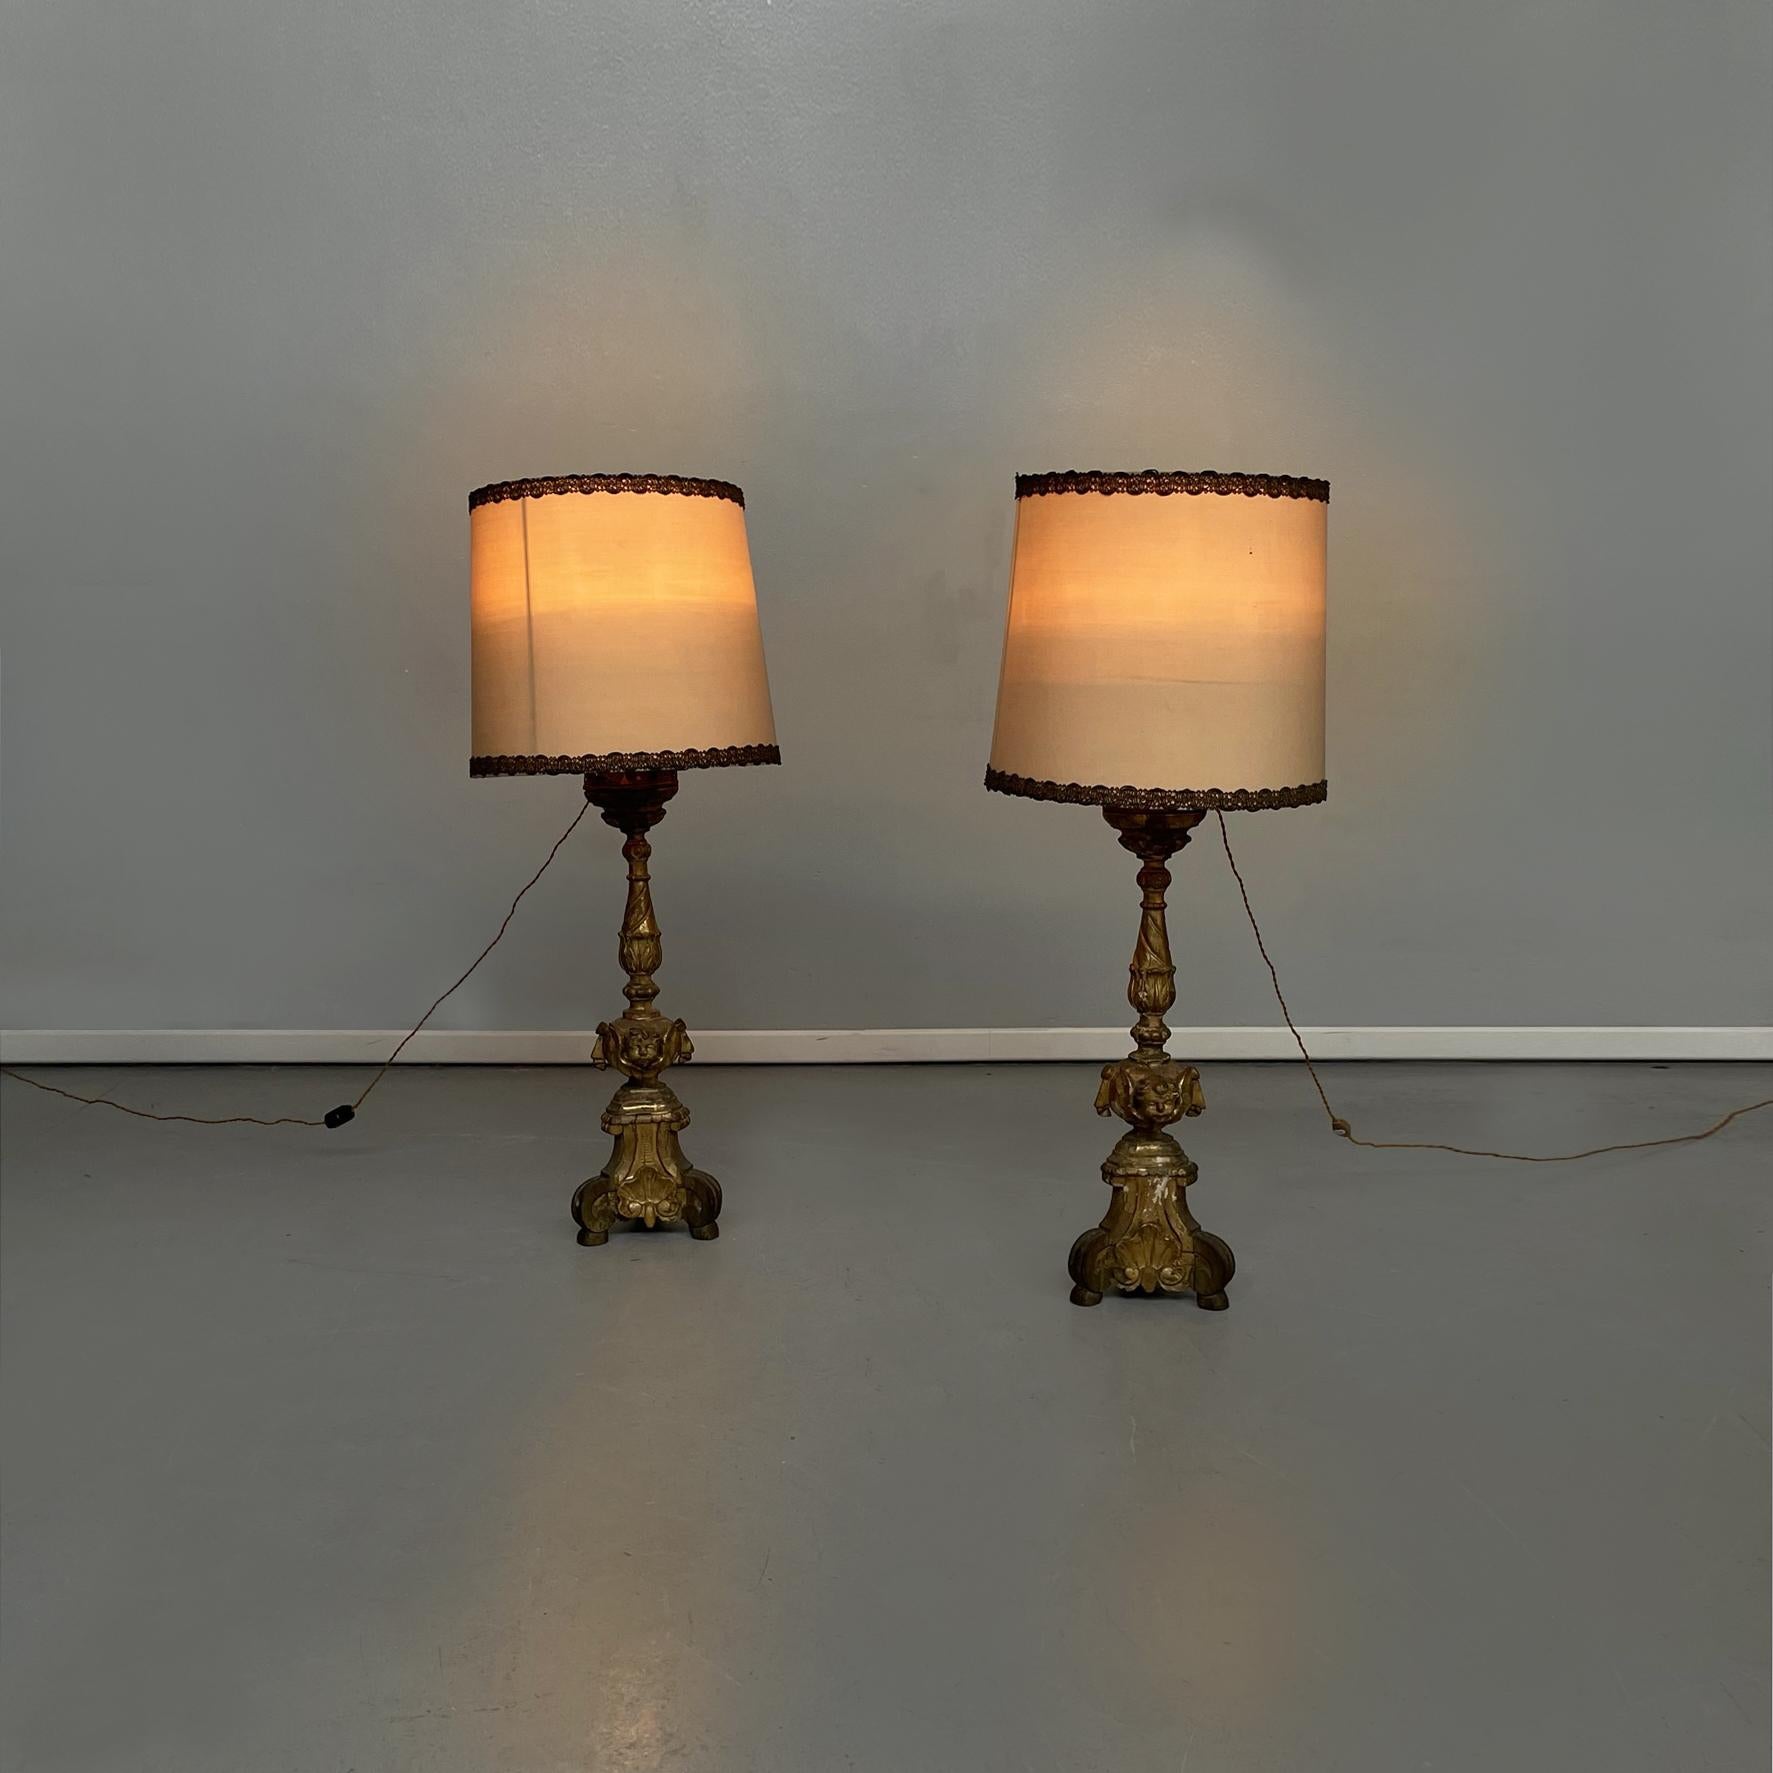 Italienische antike Kandelaberlampen aus goldfarbenem Holz und beigem Stoff, 1800er Jahre
Paar Kandelaberlampen aus goldfarbenem Holz. Der Lampenschirm ist aus beigem Stoff und mit silbernen Fäden verziert. Die hölzerne Struktur ist fein